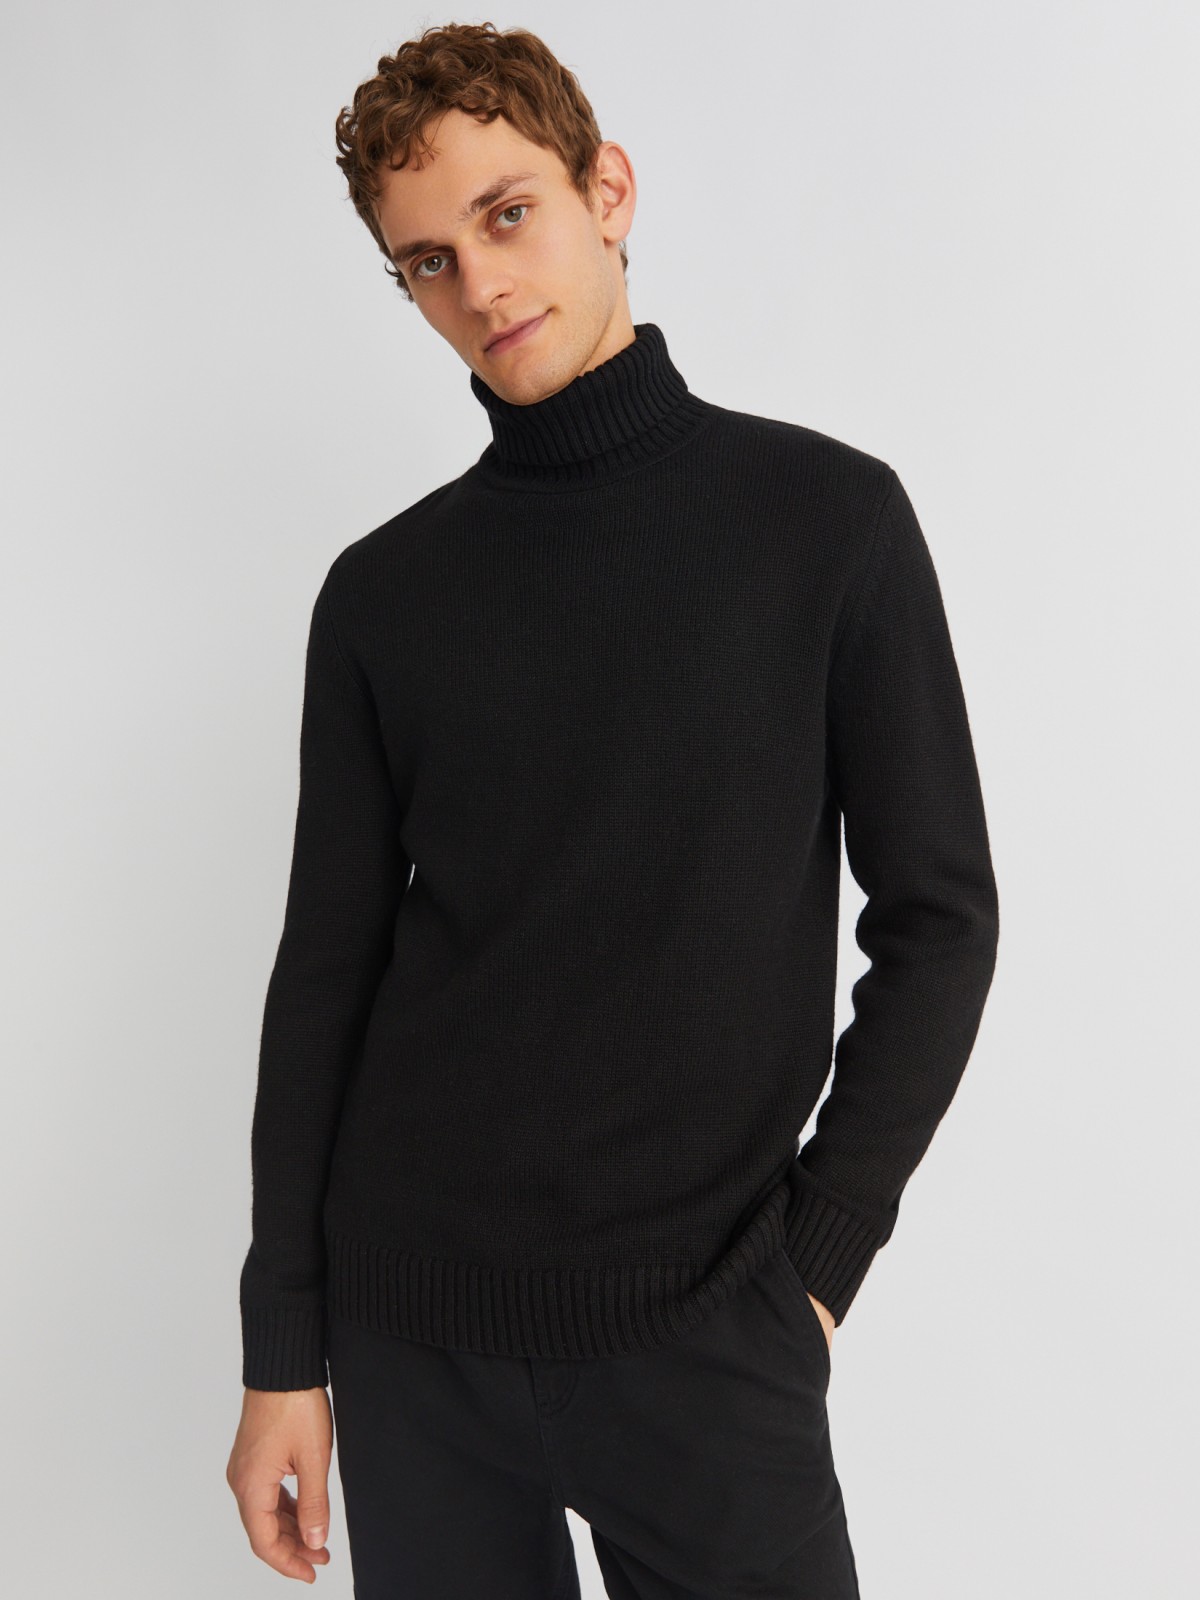 Вязаная шерстяная водолазка-свитер с горлом zolla 013436163072, цвет черный, размер M - фото 1